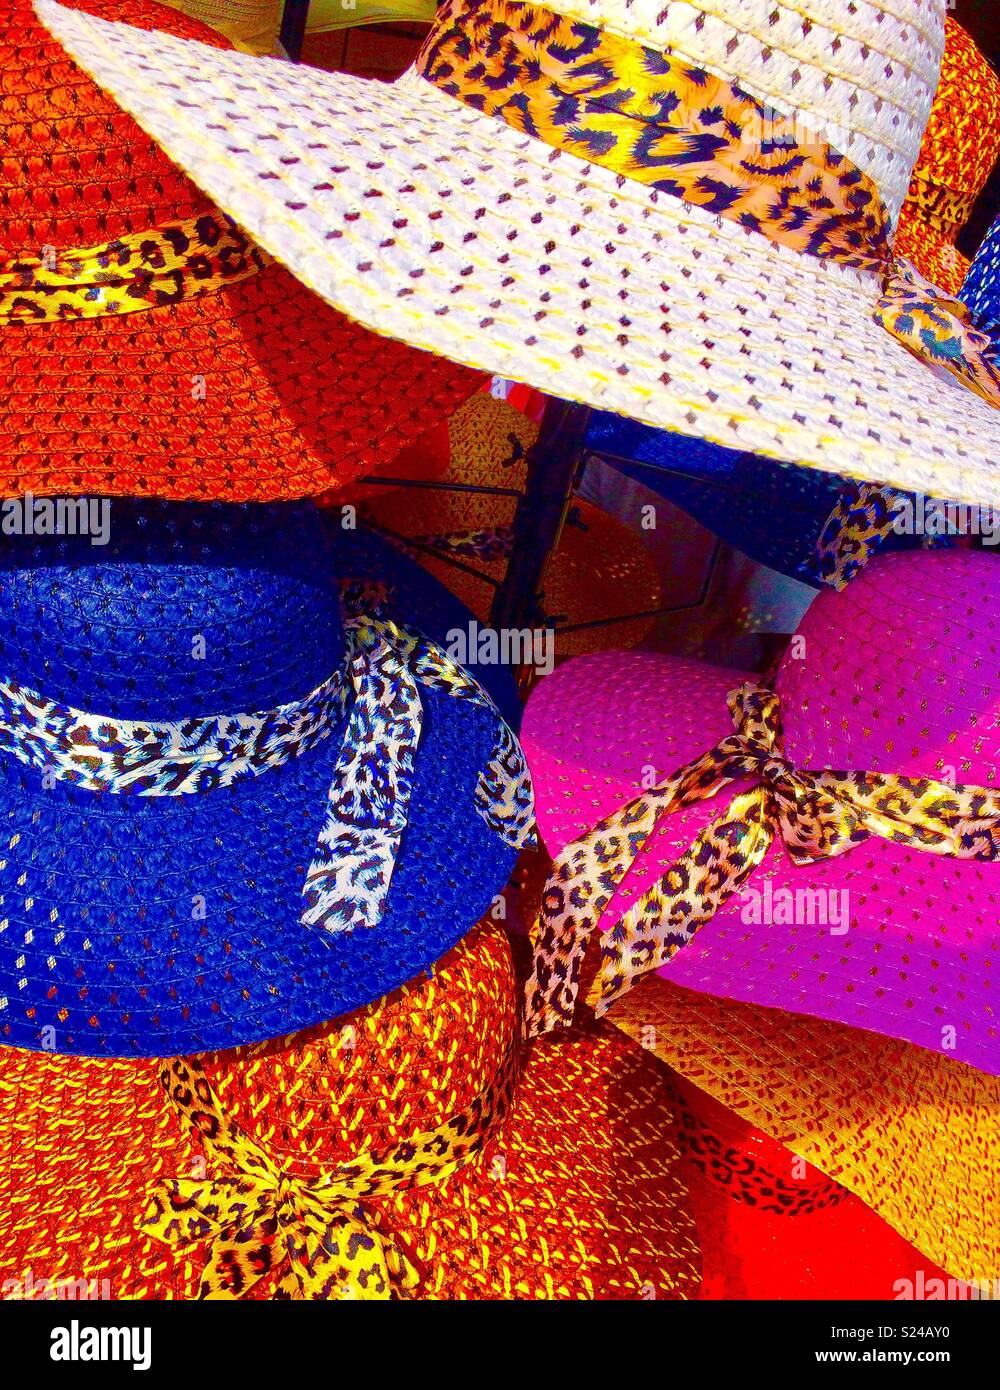 Chapeaux de couleur Banque de photographies et d'images à haute résolution  - Alamy